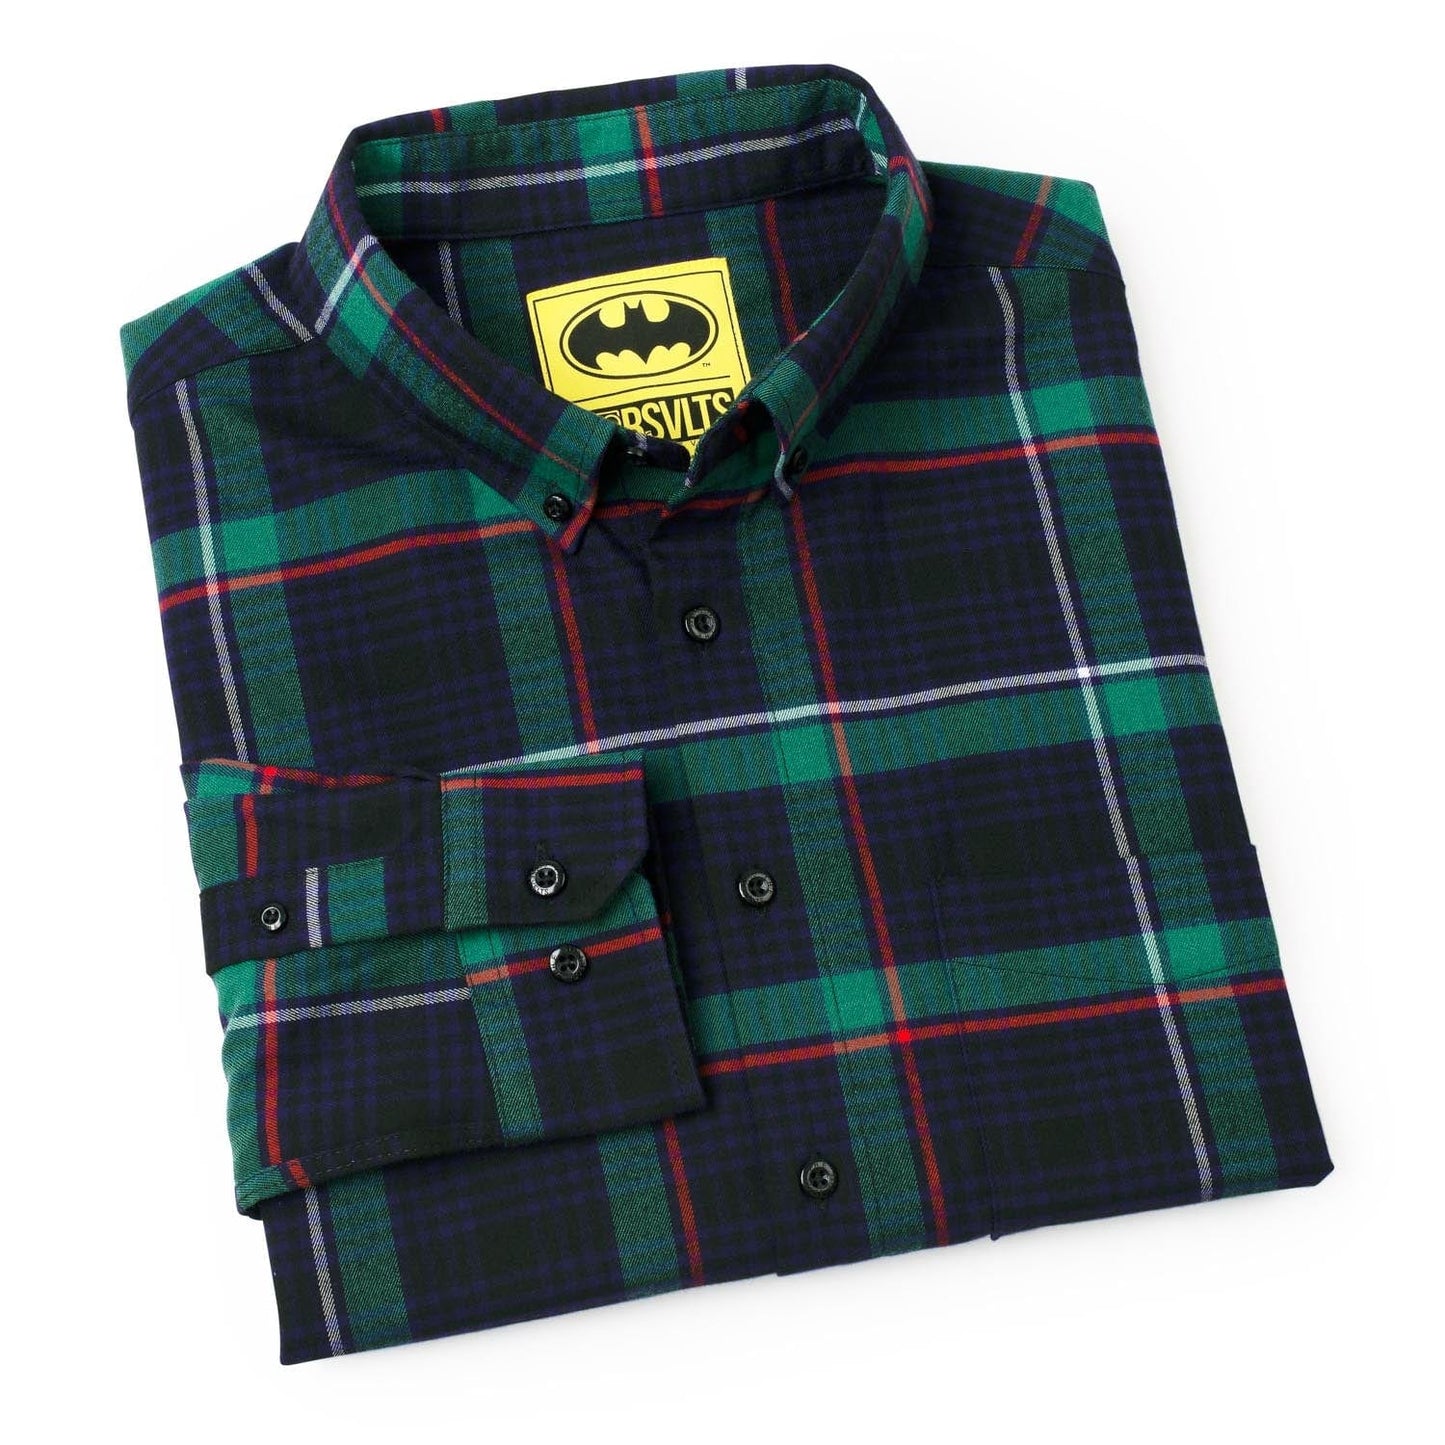 The Joker "Hidden Laugh" HAHAHA inside collar (Batman) DC Comics Flannel Shirt by RSVLTS